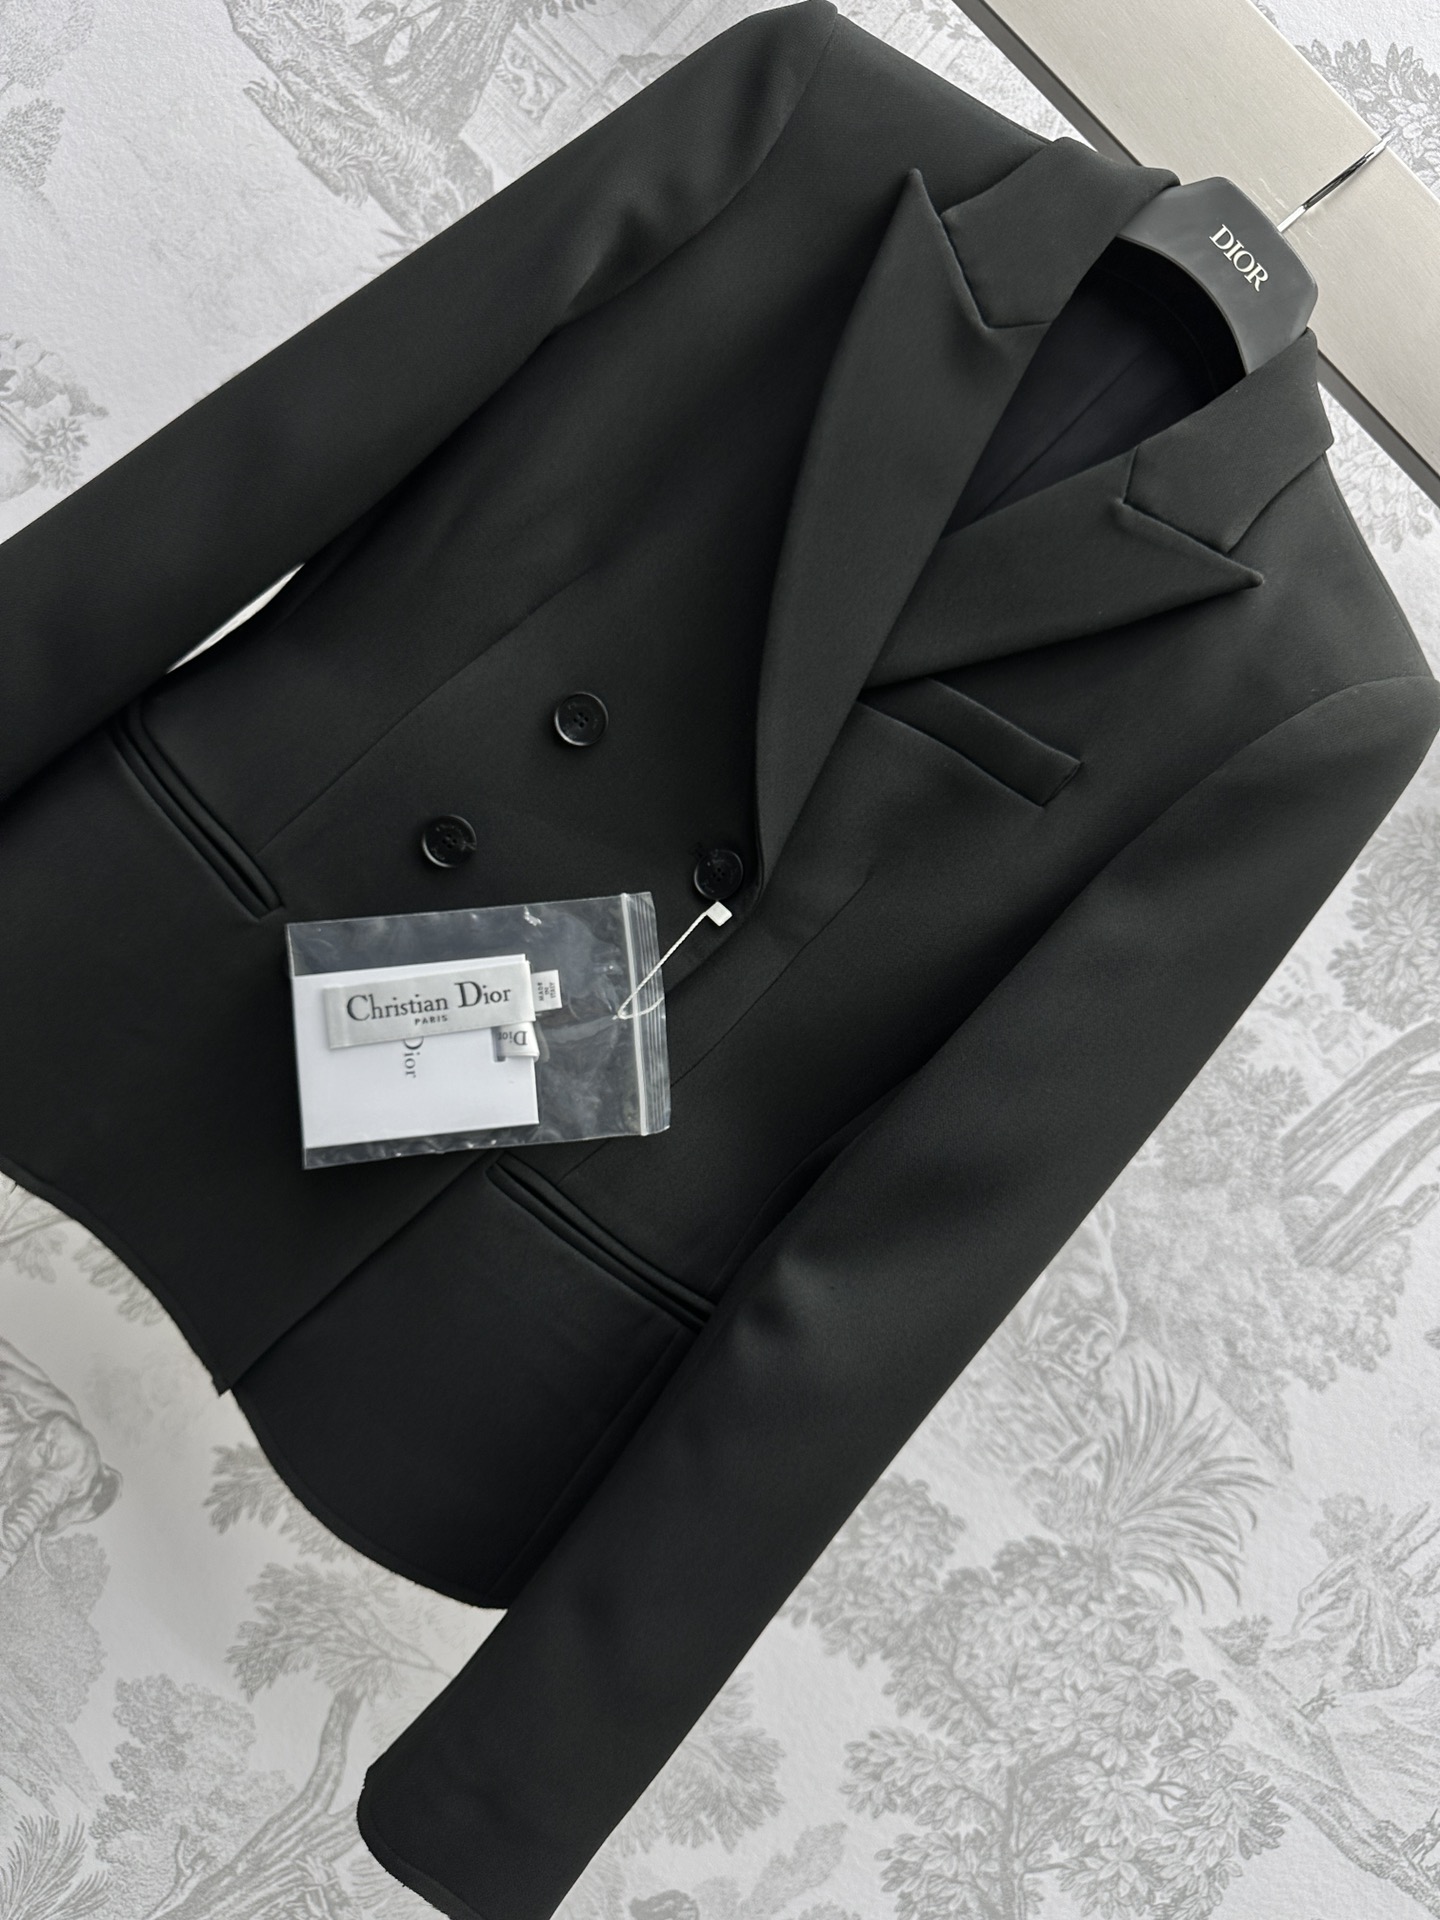 ディオールジャケットコピー スーツ トップス 柔らかい 高級感 日常服 ビジネス 通勤 ハンサム ブラック_2